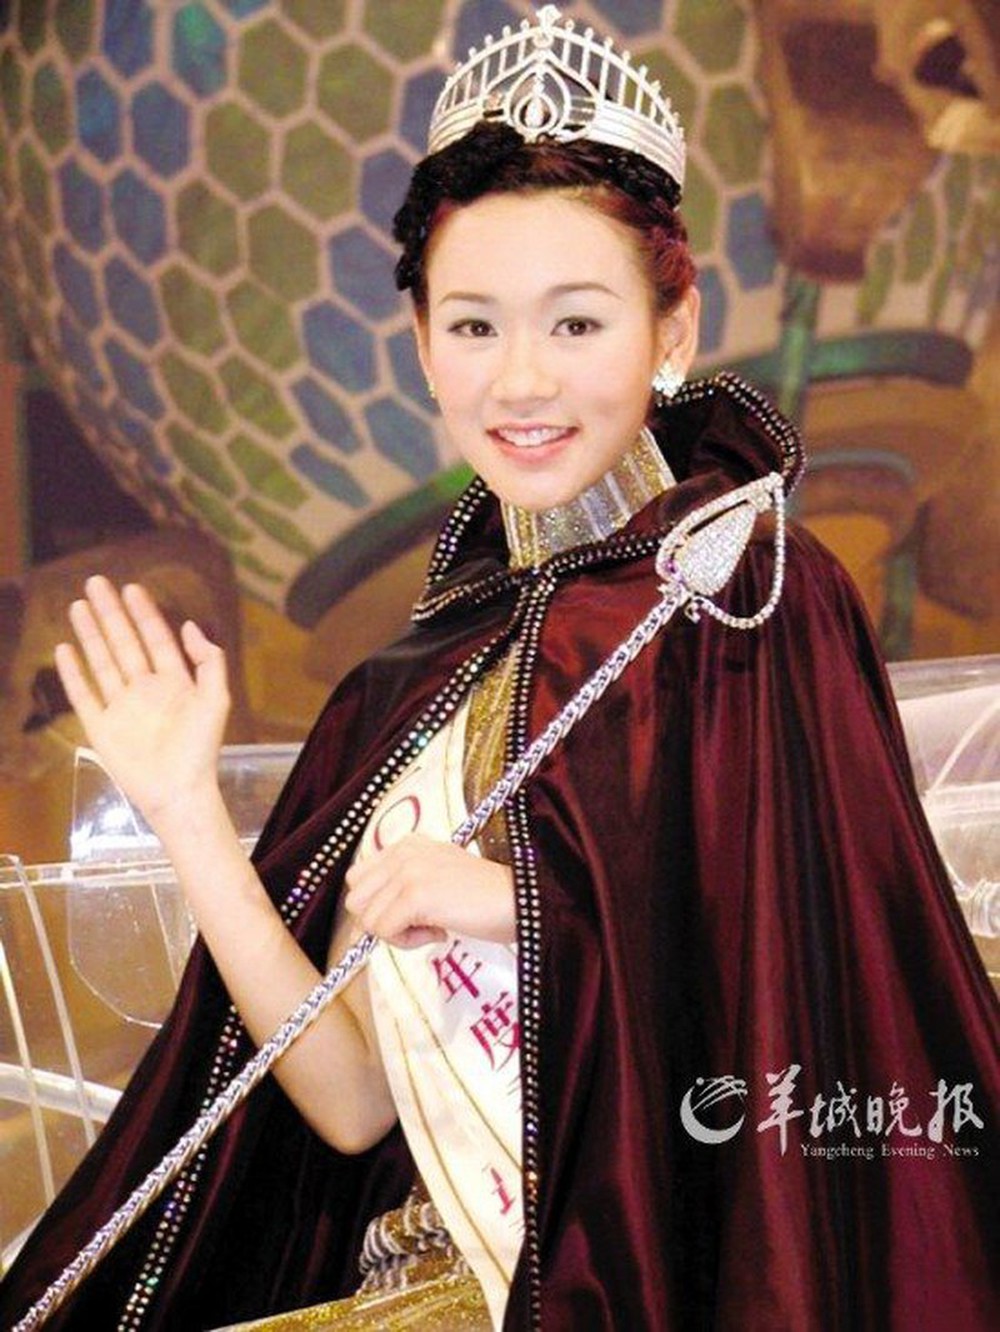 Hoa hậu Hong Kong tuột dốc vì chửa hoang, phải bán bia kiếm sống, nói dối cưới được đại gia - Ảnh 1.